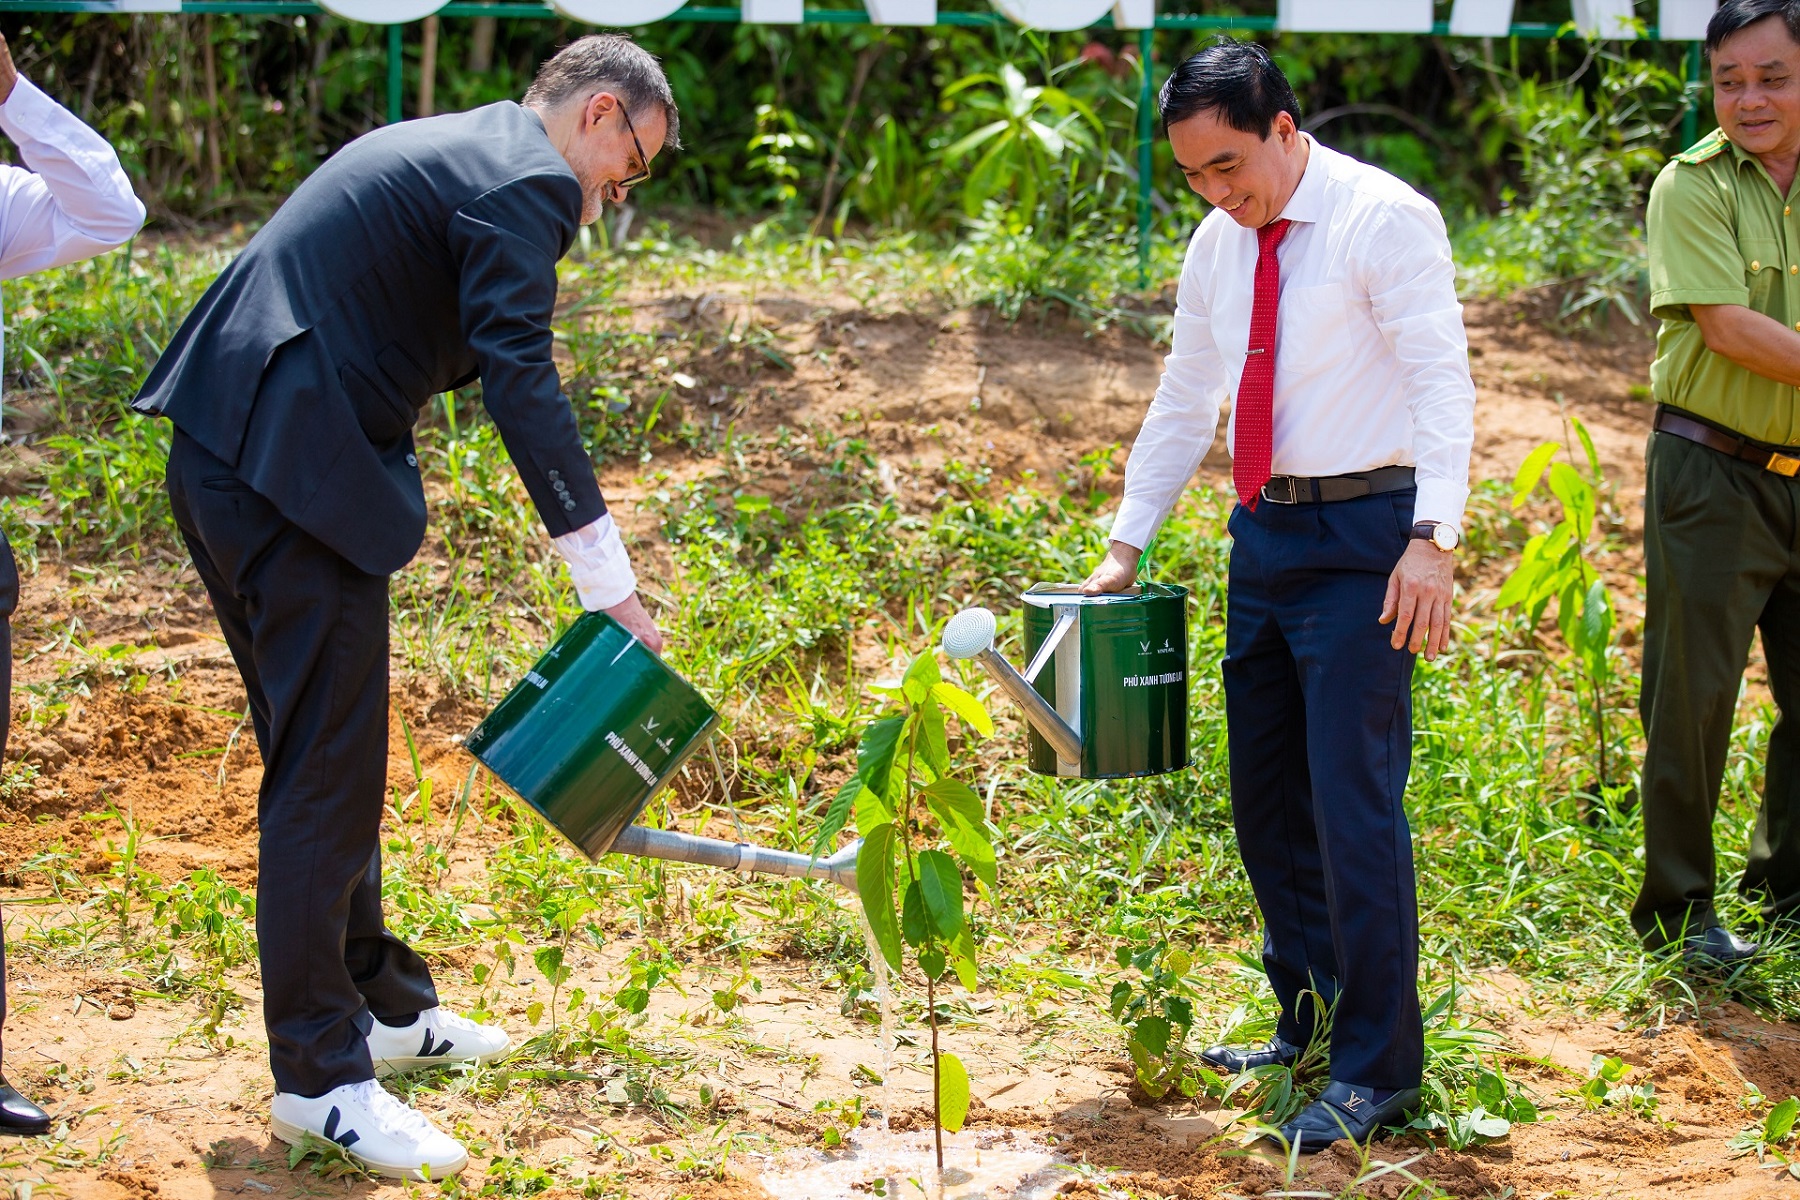 VinFast khởi động dự án trồng rừng "Phủ xanh tương lai"